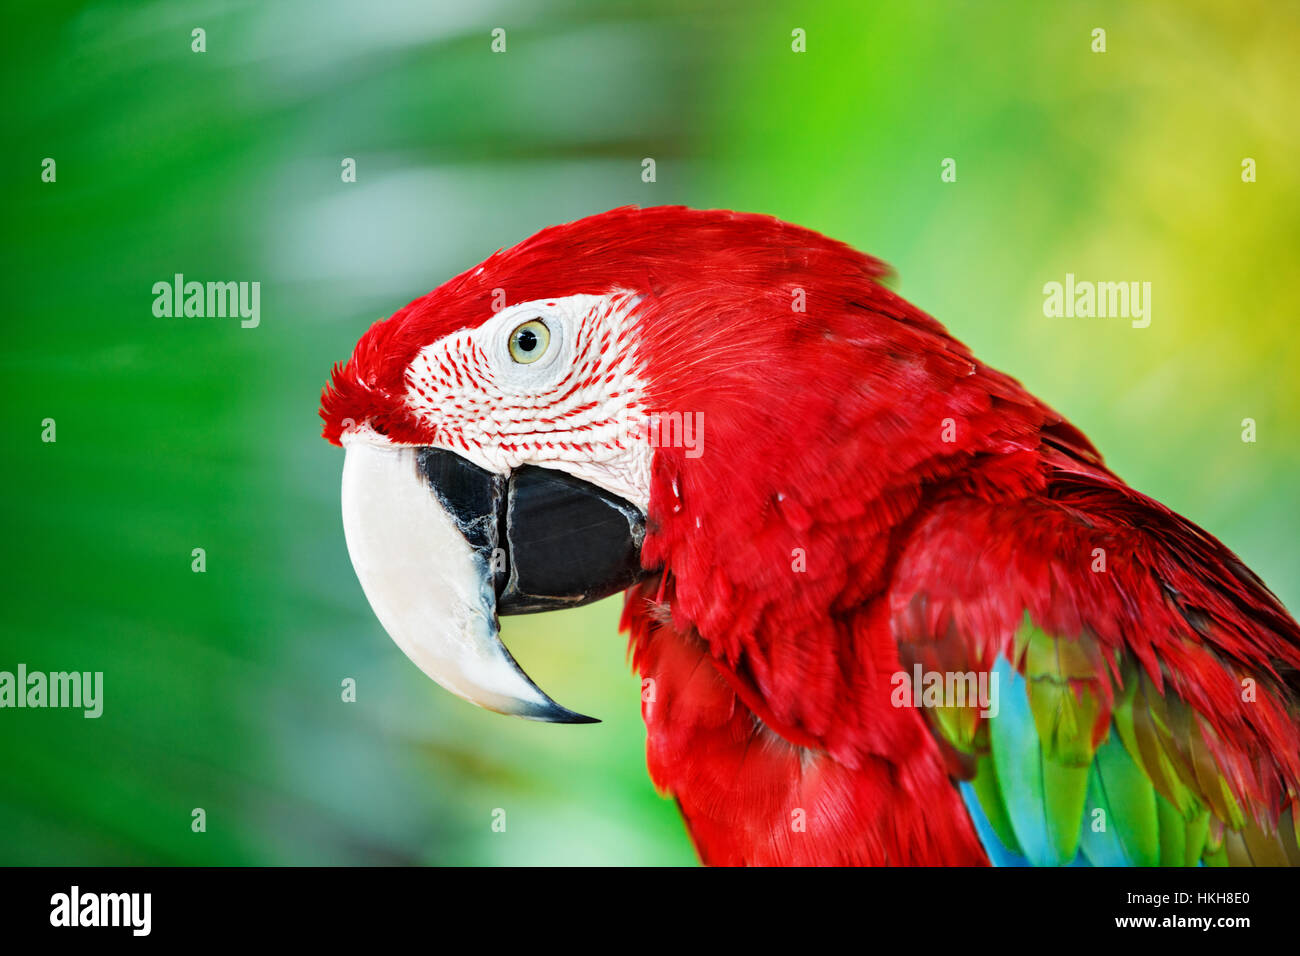 Porträt von roter Ara Papagei gegen Dschungel. Papagei Kopf auf grünem Hintergrund. Natur, Tierwelt und tropischer Regenwald Vögel. Stockfoto